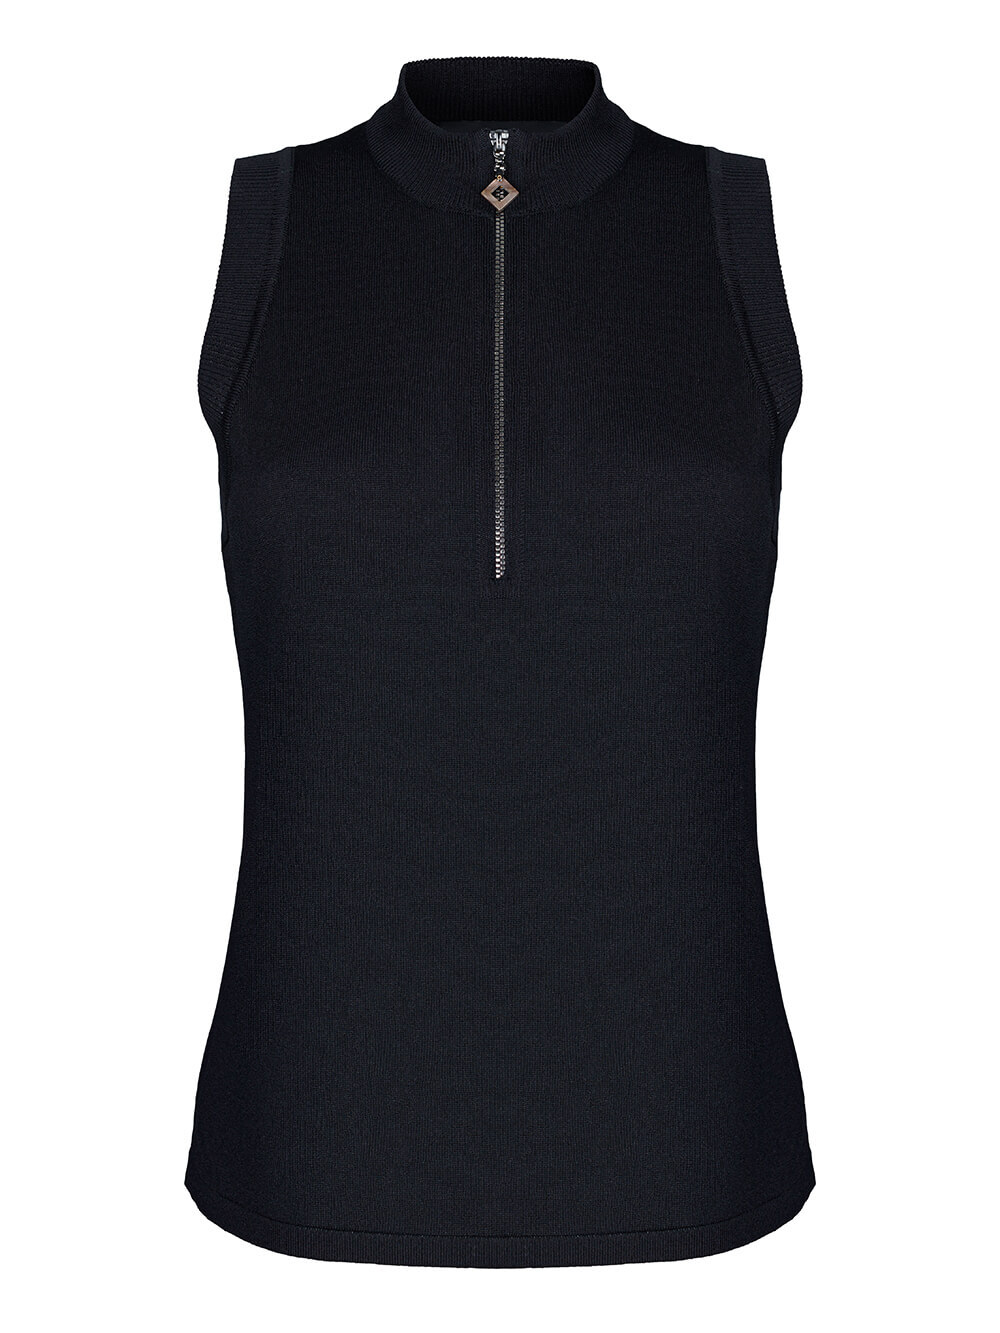 Женский свитер без рукавов черного цвета из шелка и вискозы - фото 1